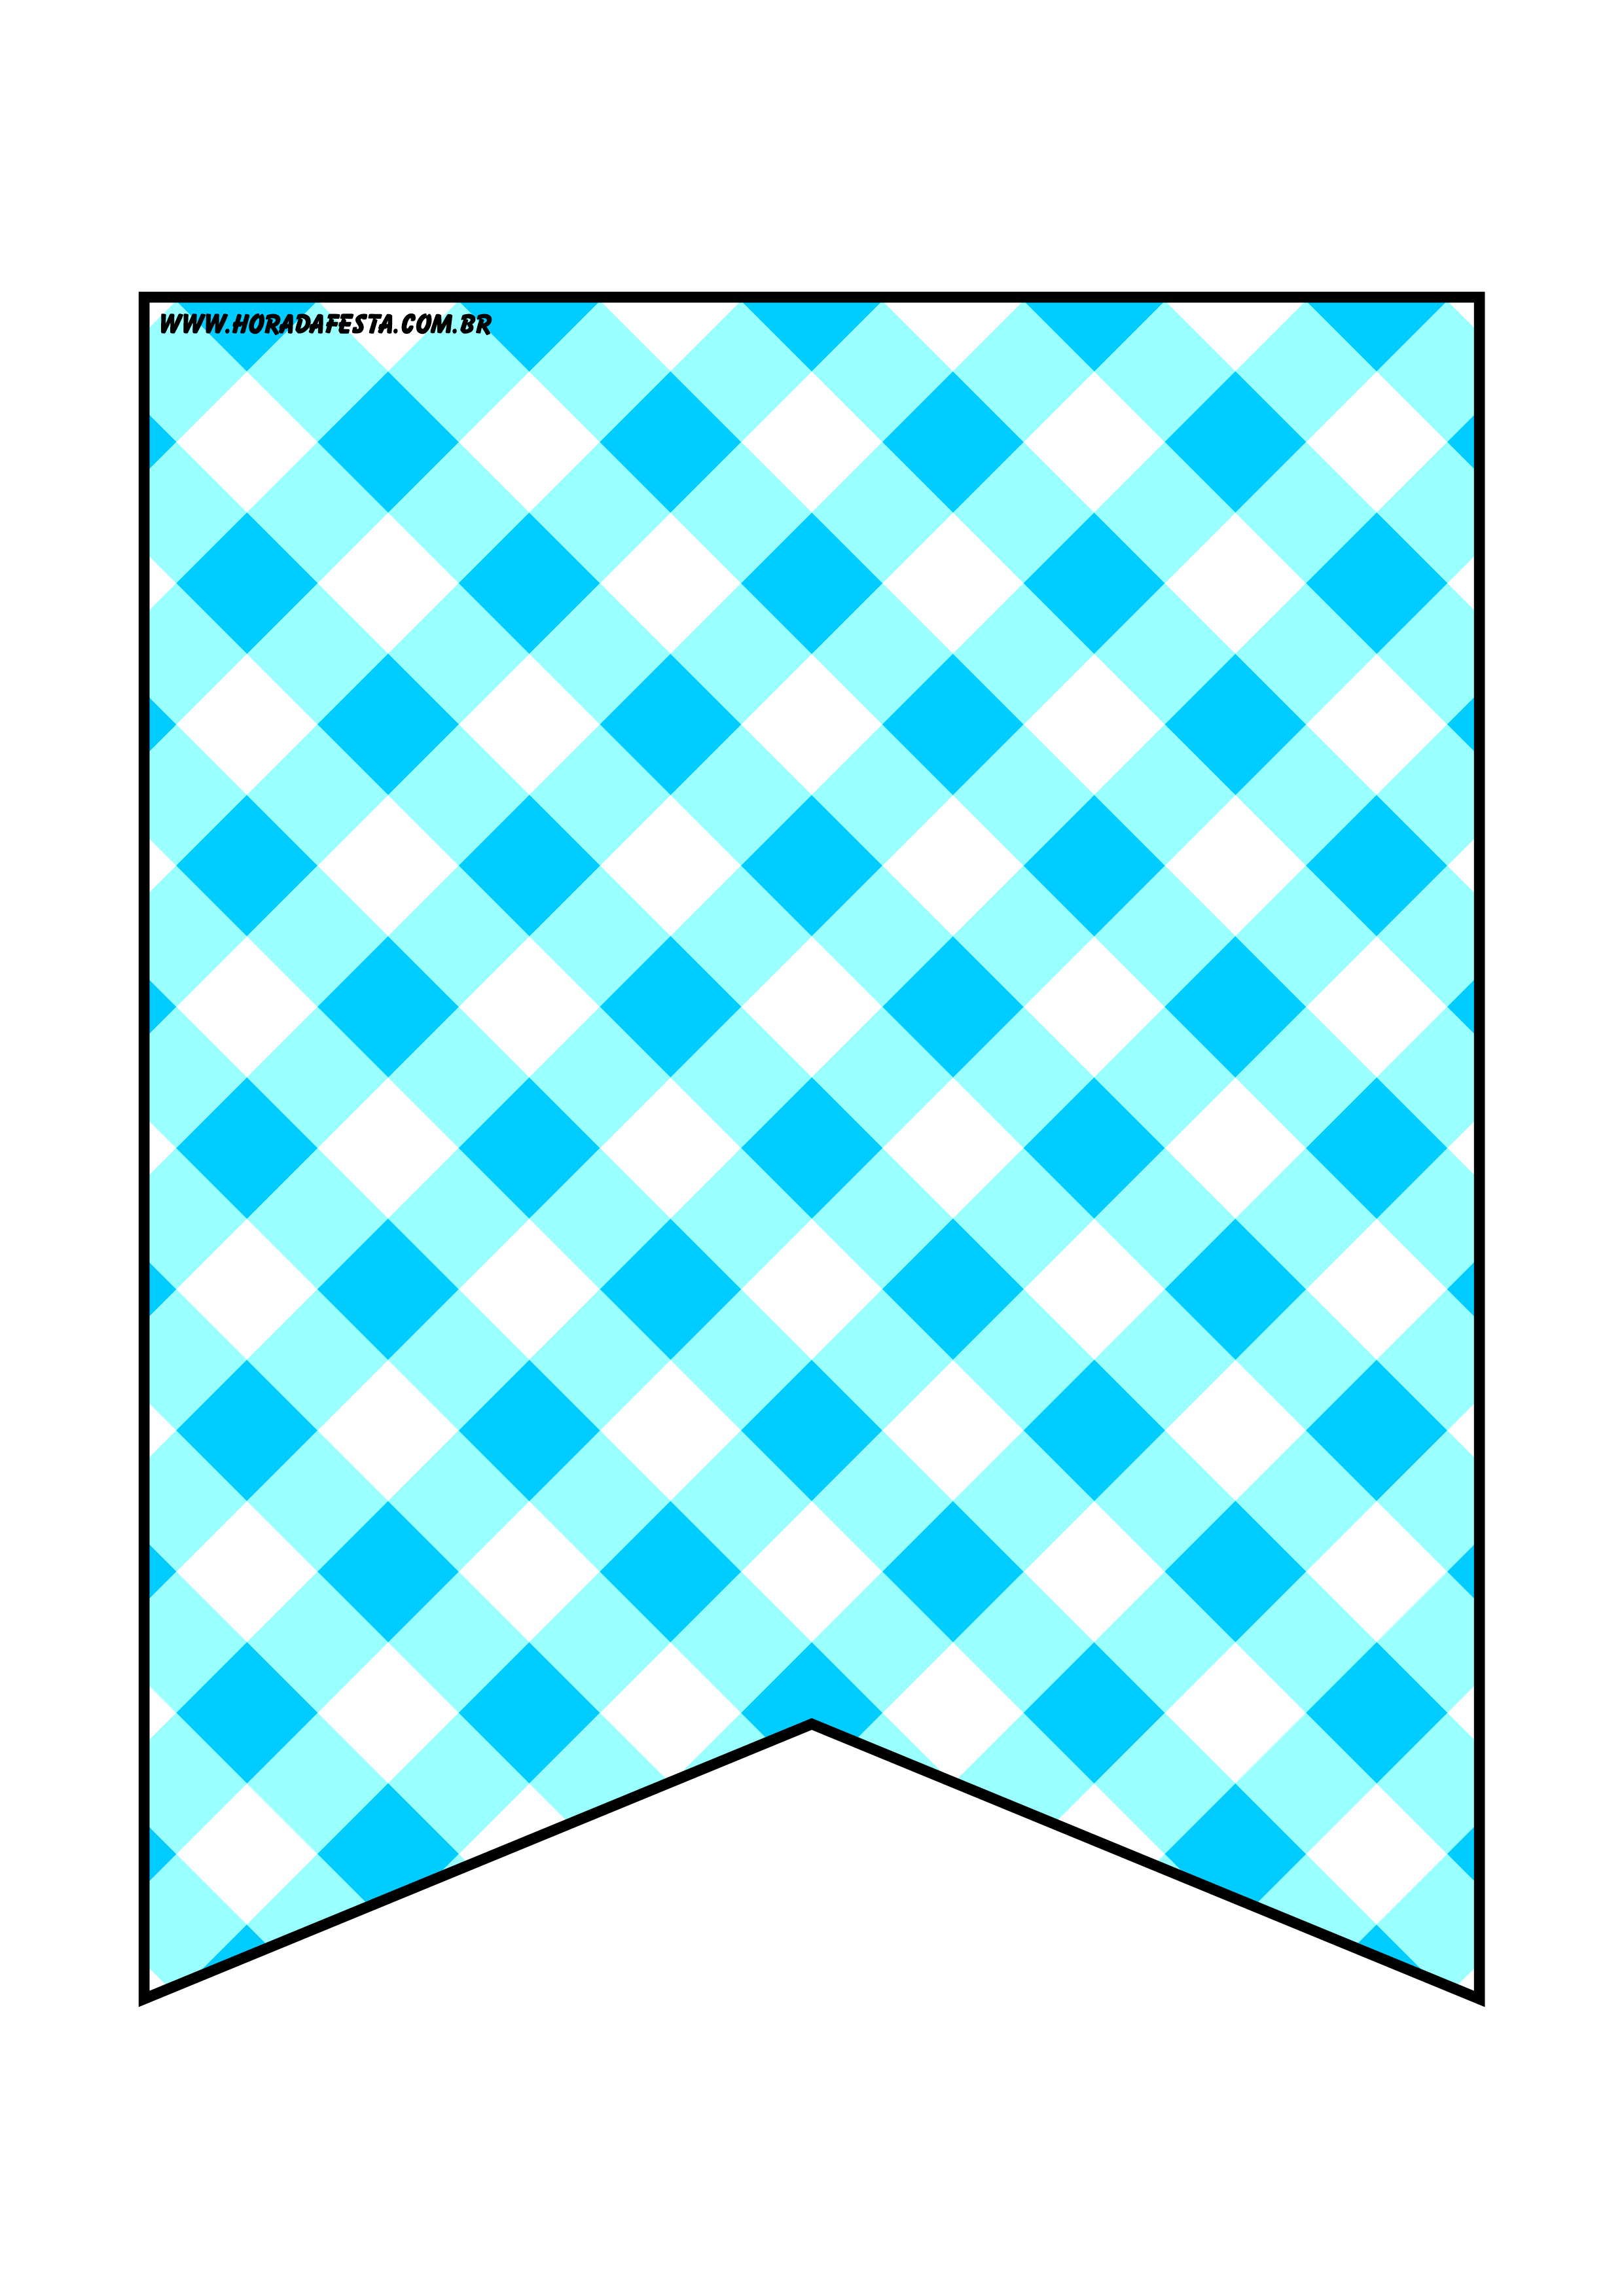 Bandeirinhas de São João xadrez azul e branco decoração de festa junina artigos de papelaria png